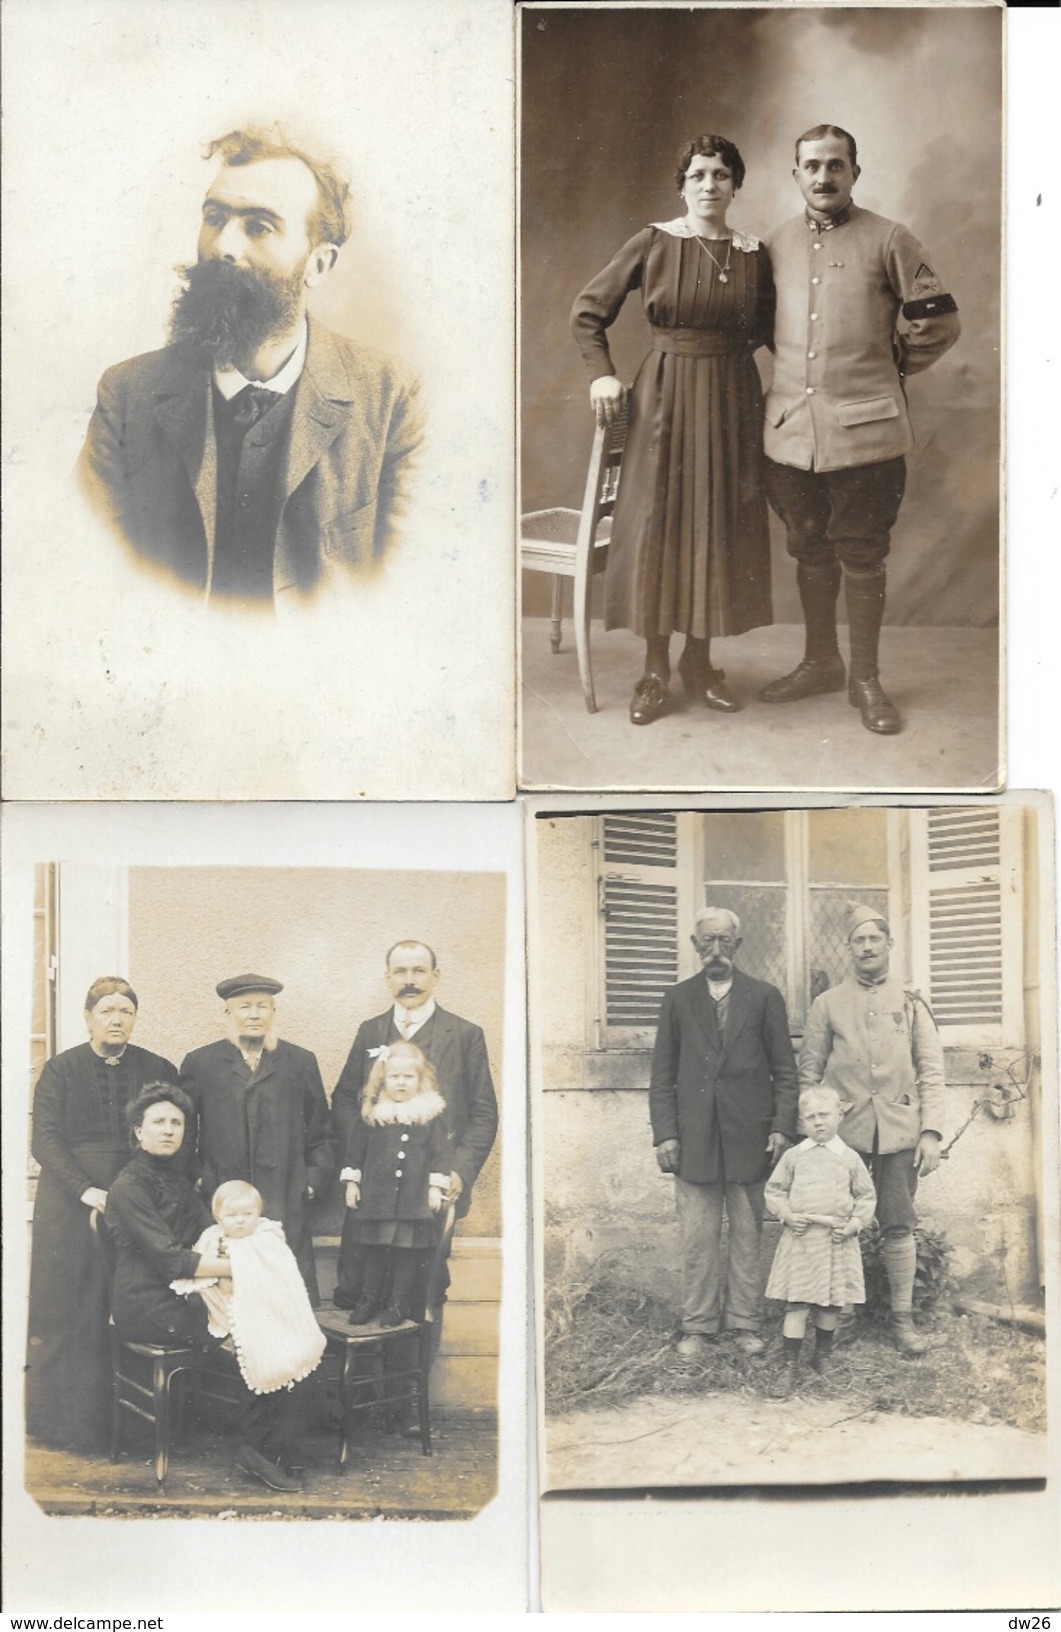 Lot de 100 cartes et cartes-photo à identifier  recherche: Familles, évènements, personnages, militaria... 1900 à 1950